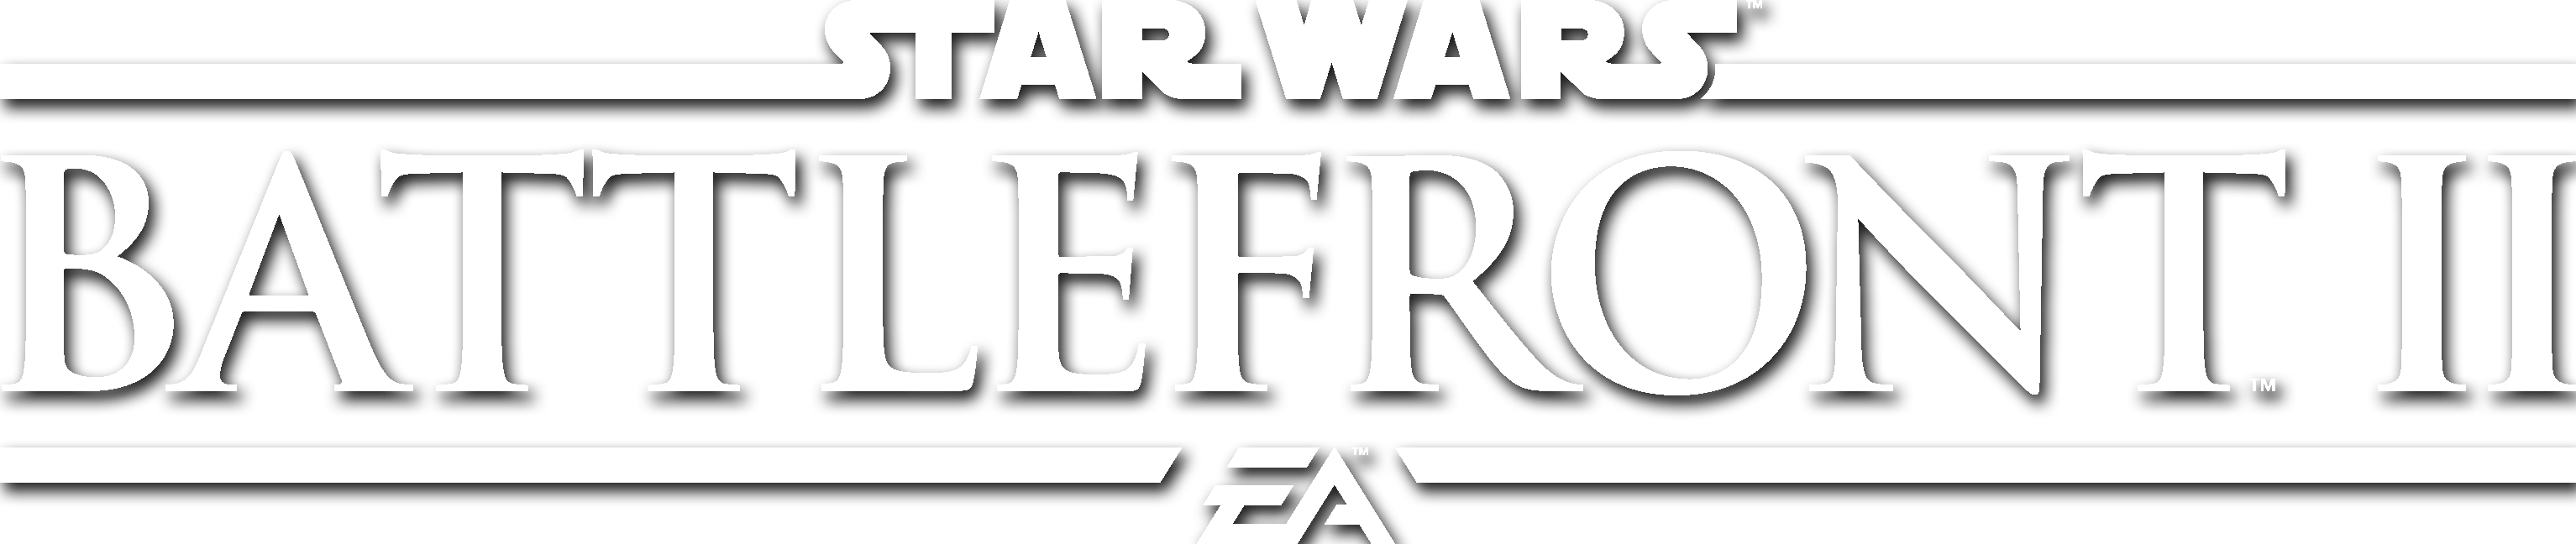 Star Wars Battlefront Logo PNG File